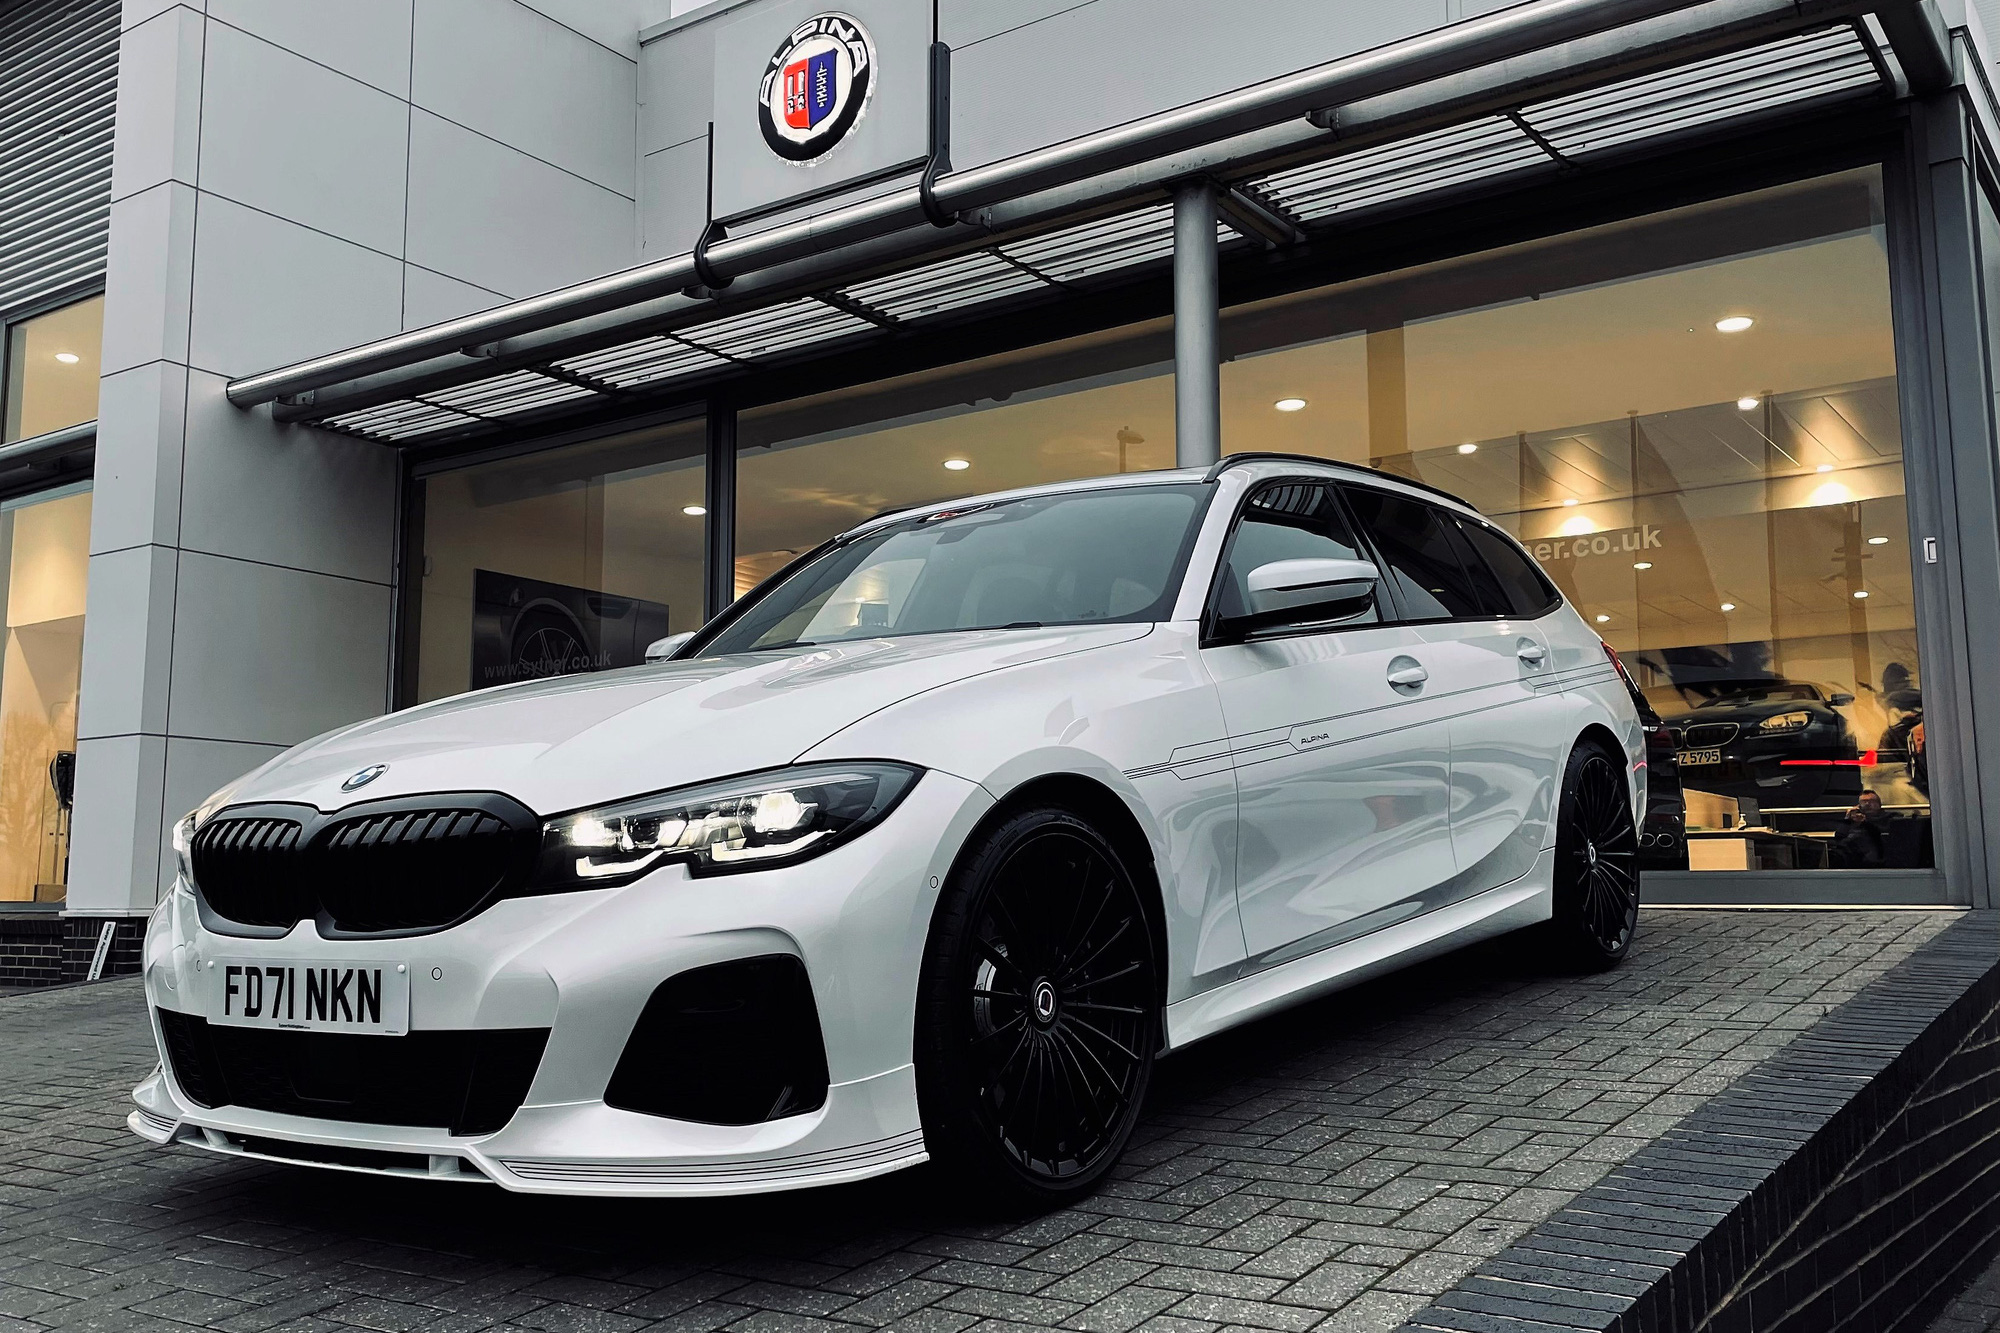 Chơi trội, BMW mua đứt hãng độ nổi tiếng, hứa hẹn ra dòng xe hiệu suất cao mới giống M Performance